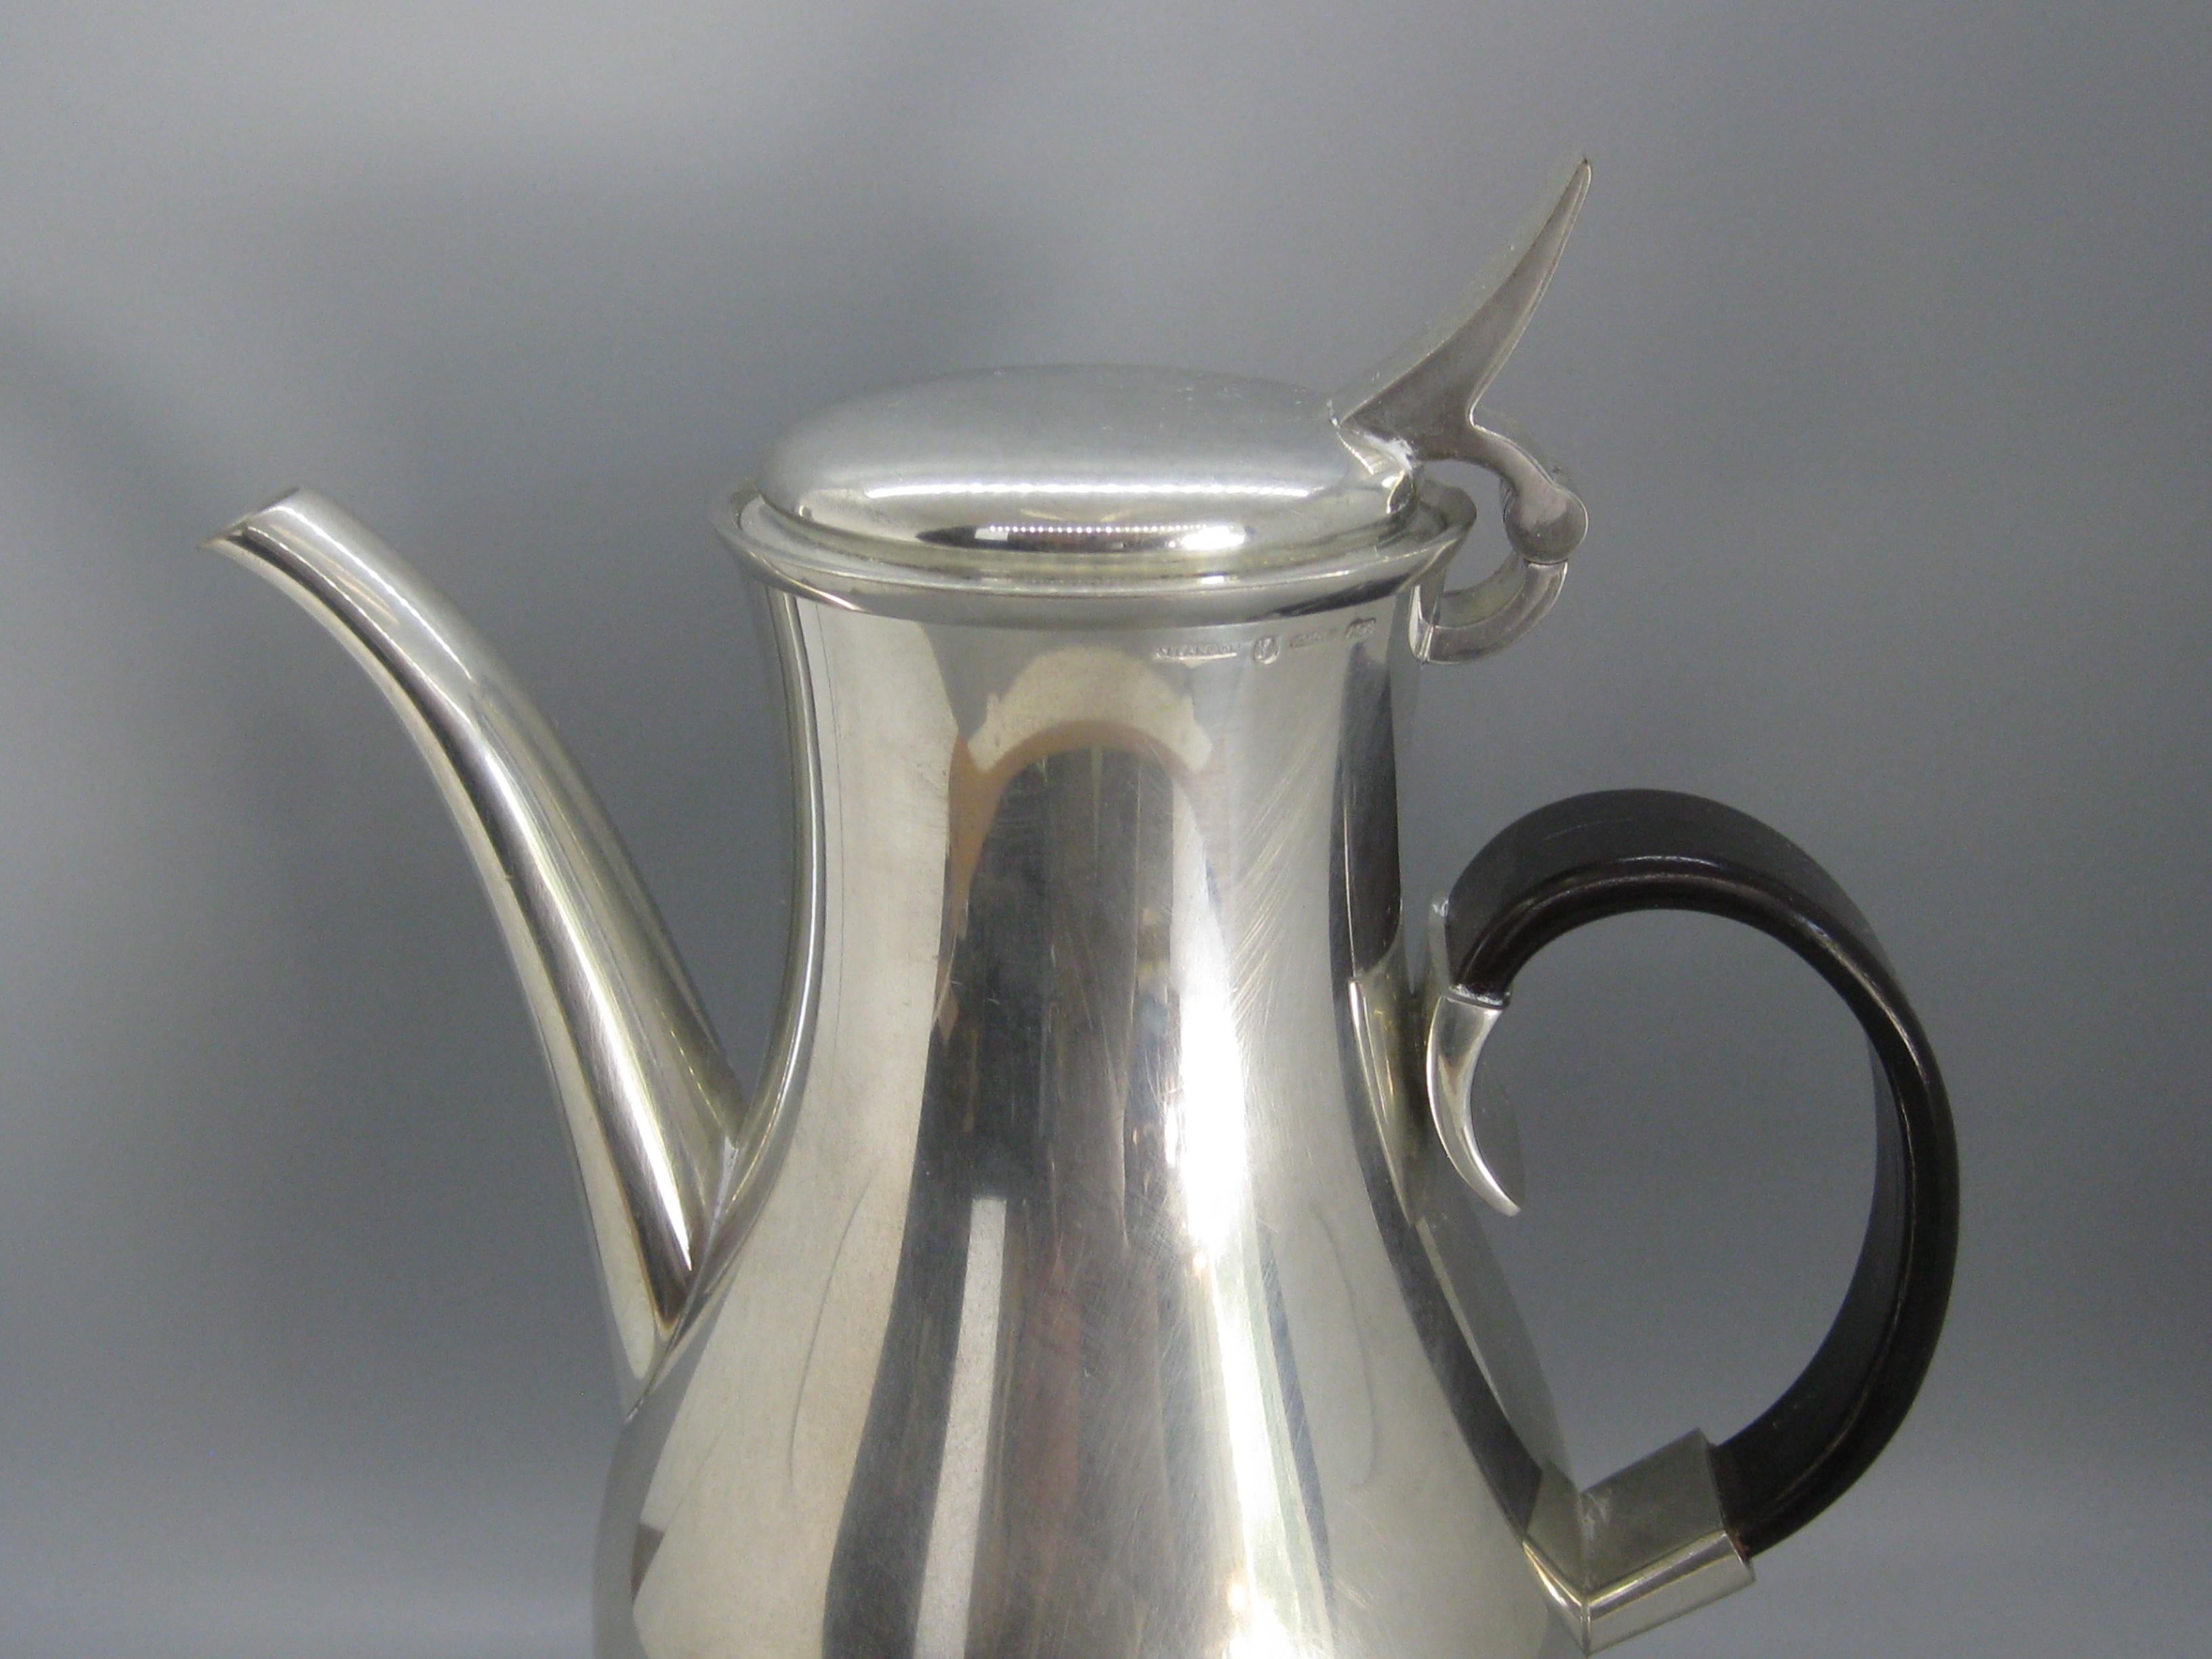 Wunderschöne Vintage-Kaffeekanne im Design der Jahrhundertmitte von Royal Selangor. Entworfen von Gerald Benney in den 1960er Jahren. Diese Teekanne stammt aus den frühen 1990er Jahren. Wunderbare Form und Design. Hat einen gebogenen Griff aus